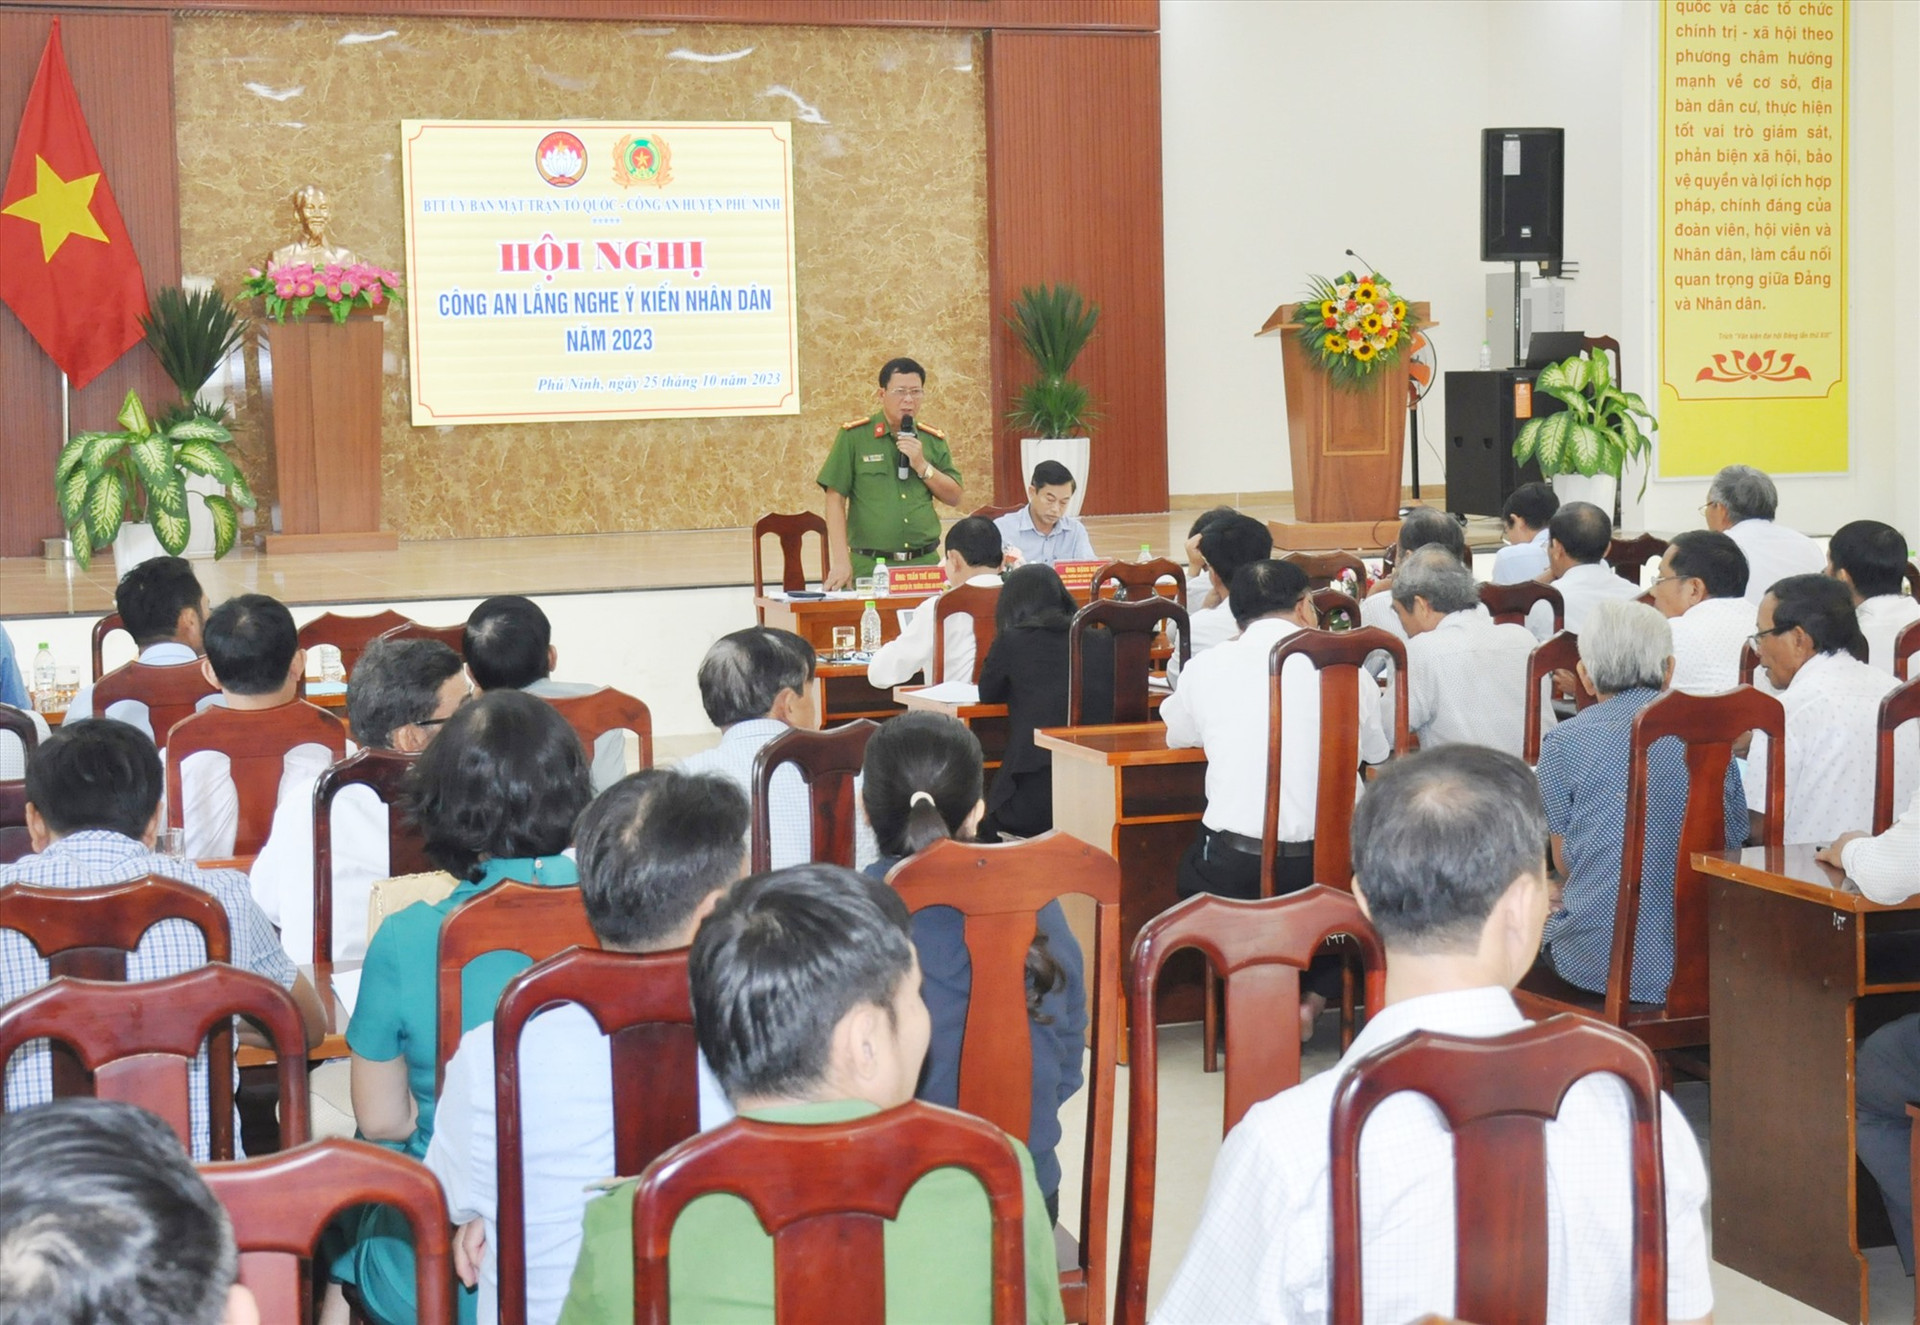 Hội nghị “Công an lắng nghe ý kiến nhân dân” vừa được Ban Thường trực Ủy ban MTTQ Việt Nam huyện Phú Ninh phối hợp với Công an huyện tổ chức. Ảnh: N.Đ